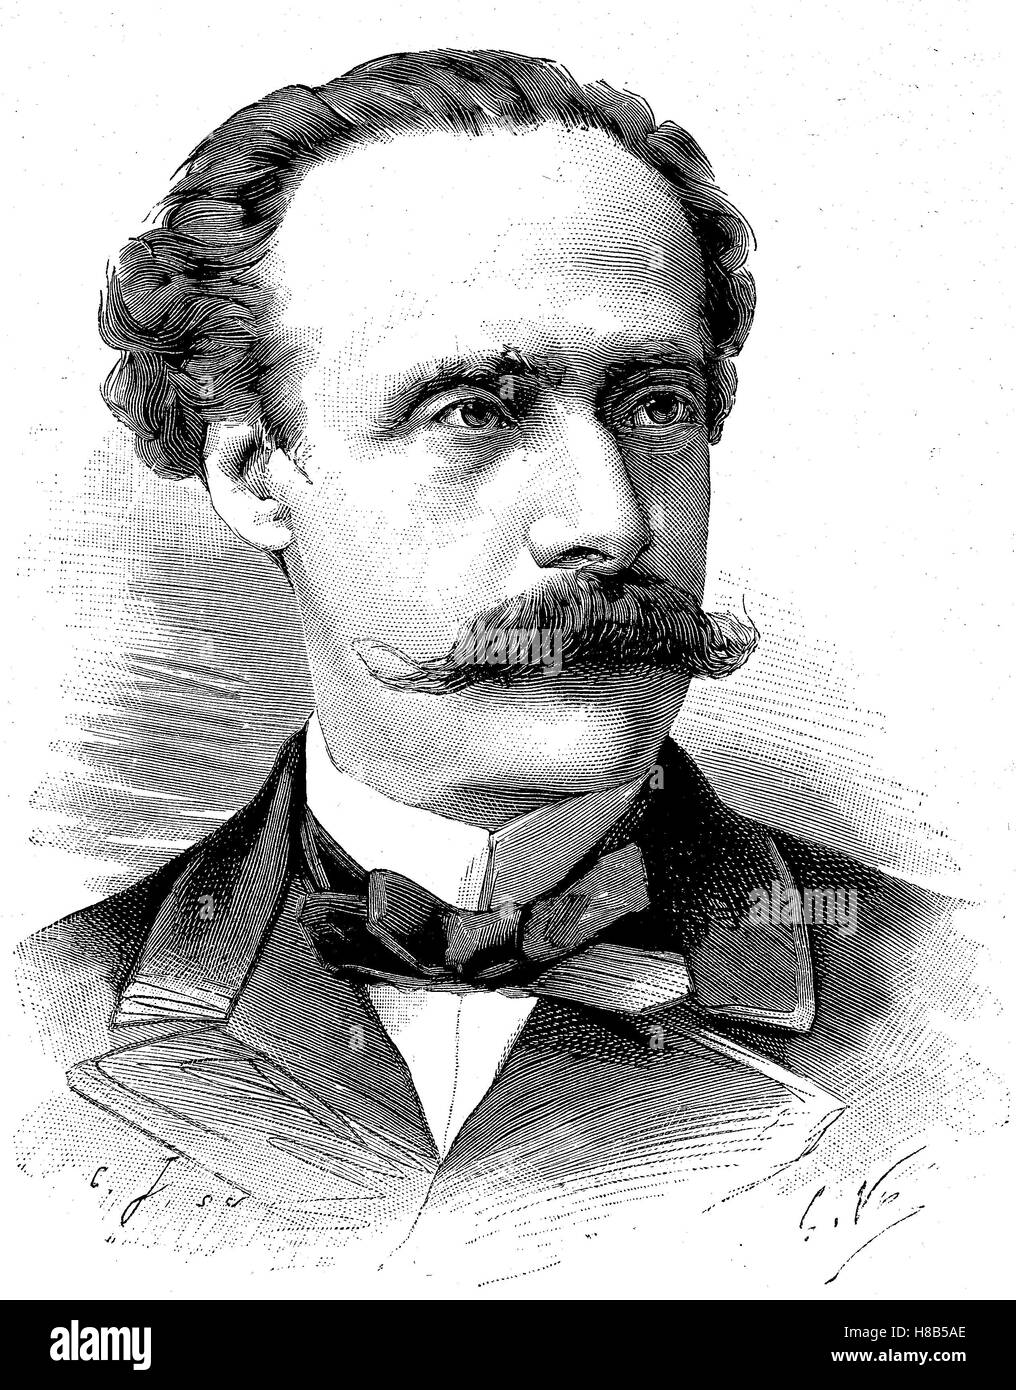 Jose Manuel Emiliano Balmaceda Fernandez, wurde 19. Juli 1840 - 18. September 1891, der 11. Präsident von Chile vom 18. September 1886, 29. August 1891, Holzschnitt aus dem Jahre 1892 Stockfoto